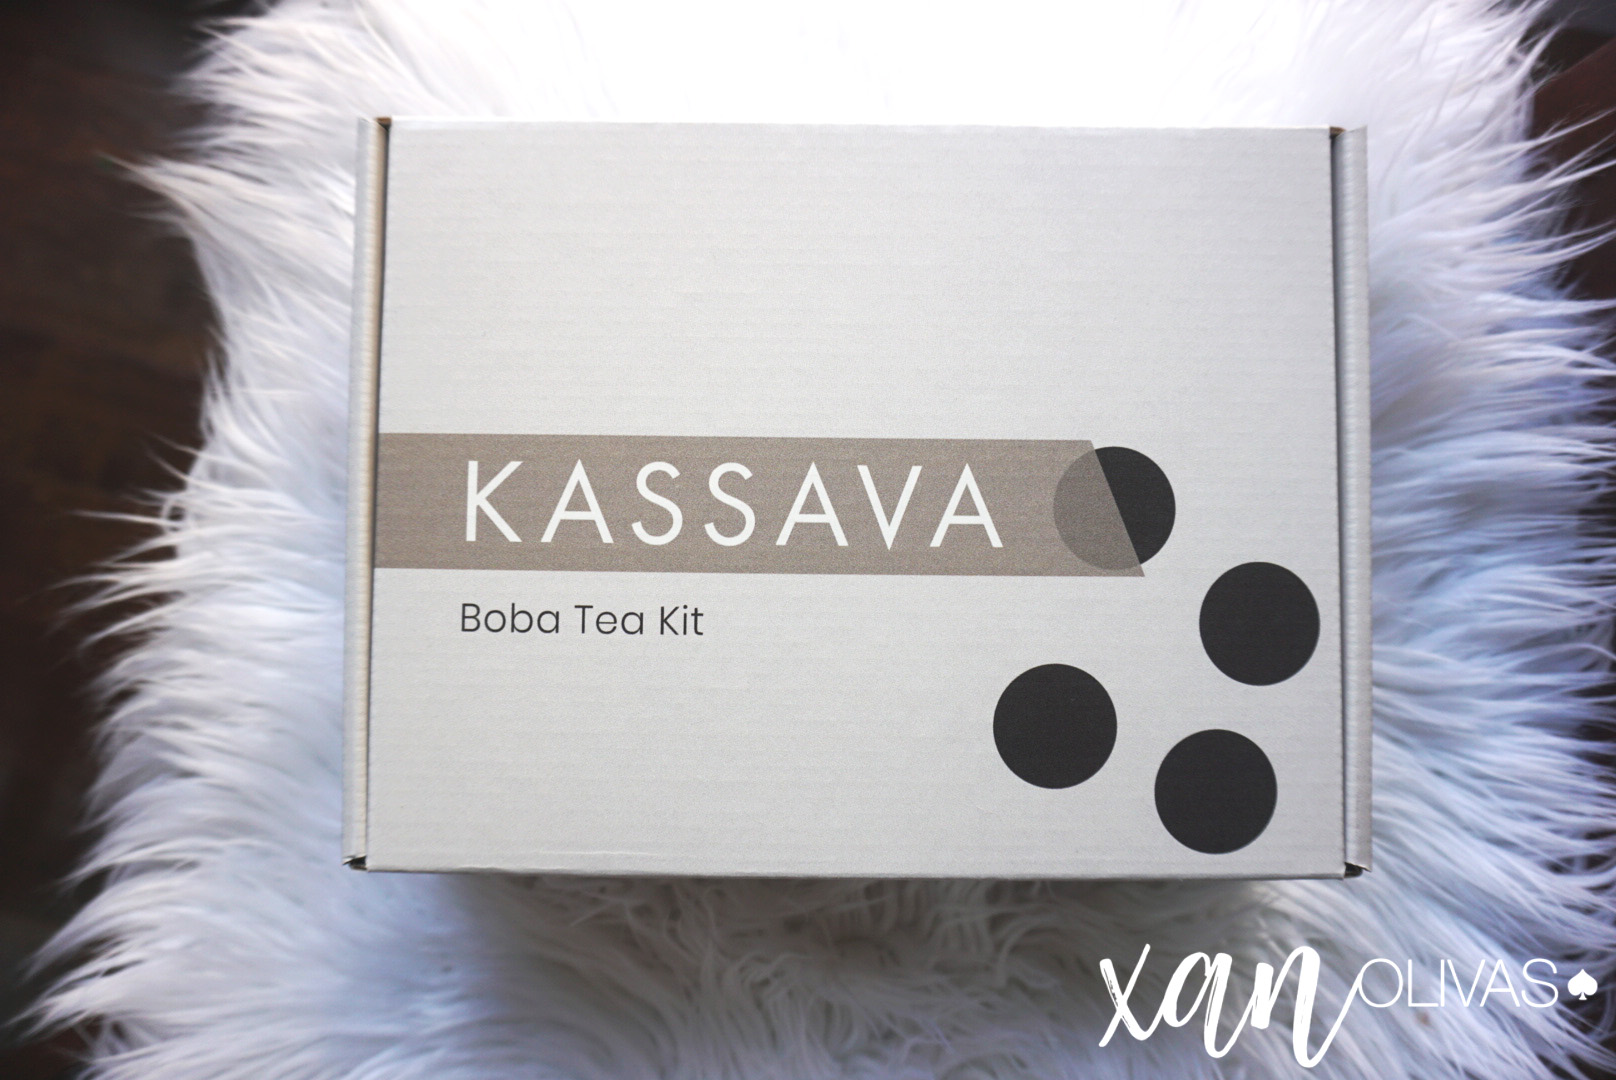 Make Boba at Home with KassavaCo!